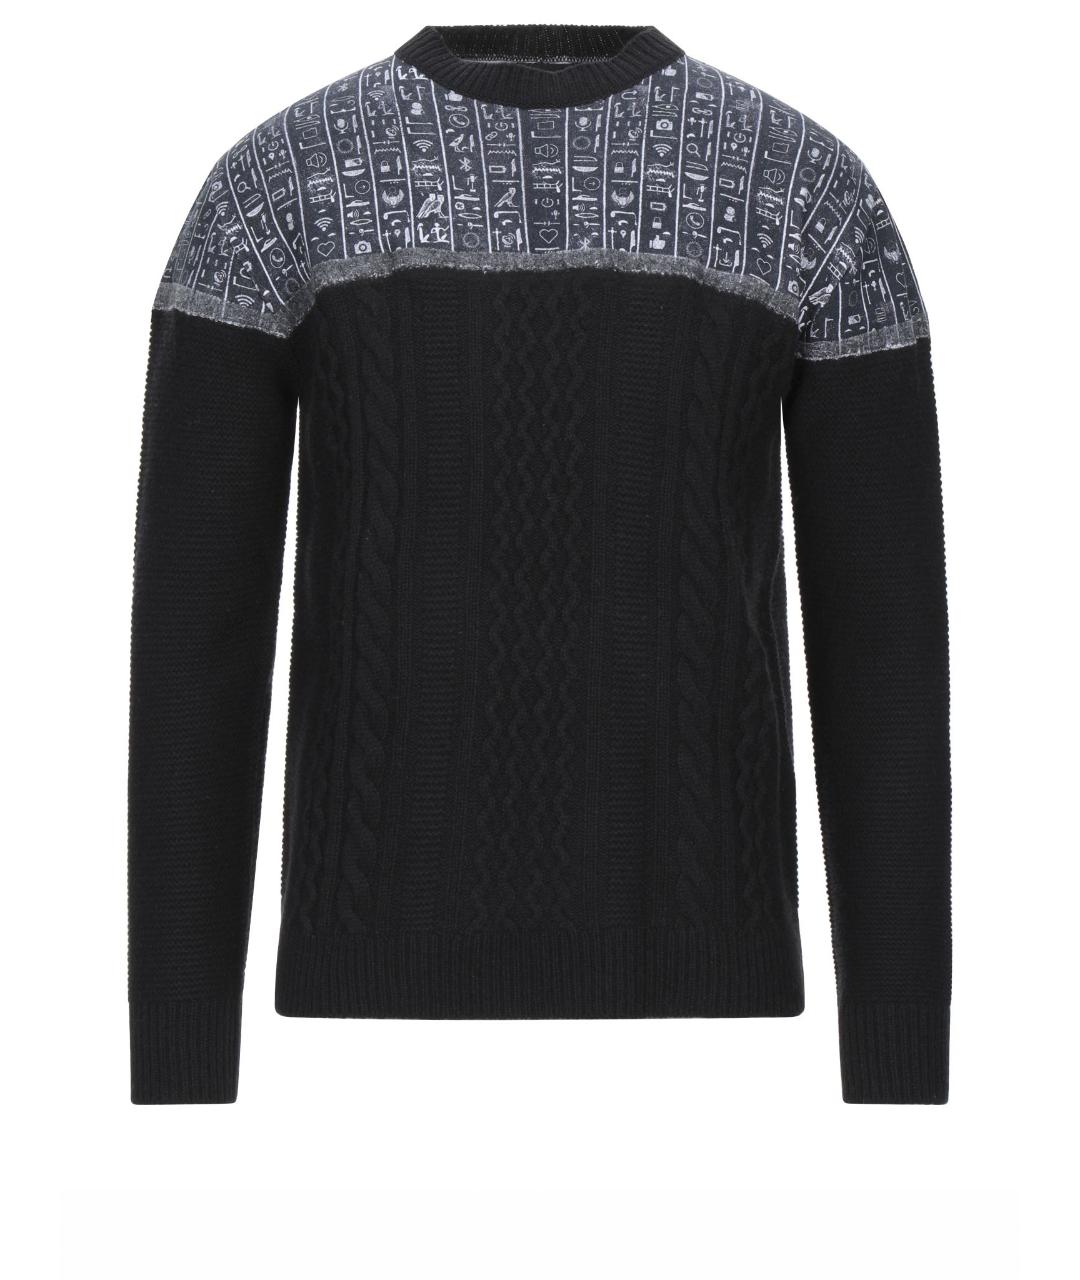 FRANKIE MORELLO Черный шерстяной джемпер / свитер, фото 1